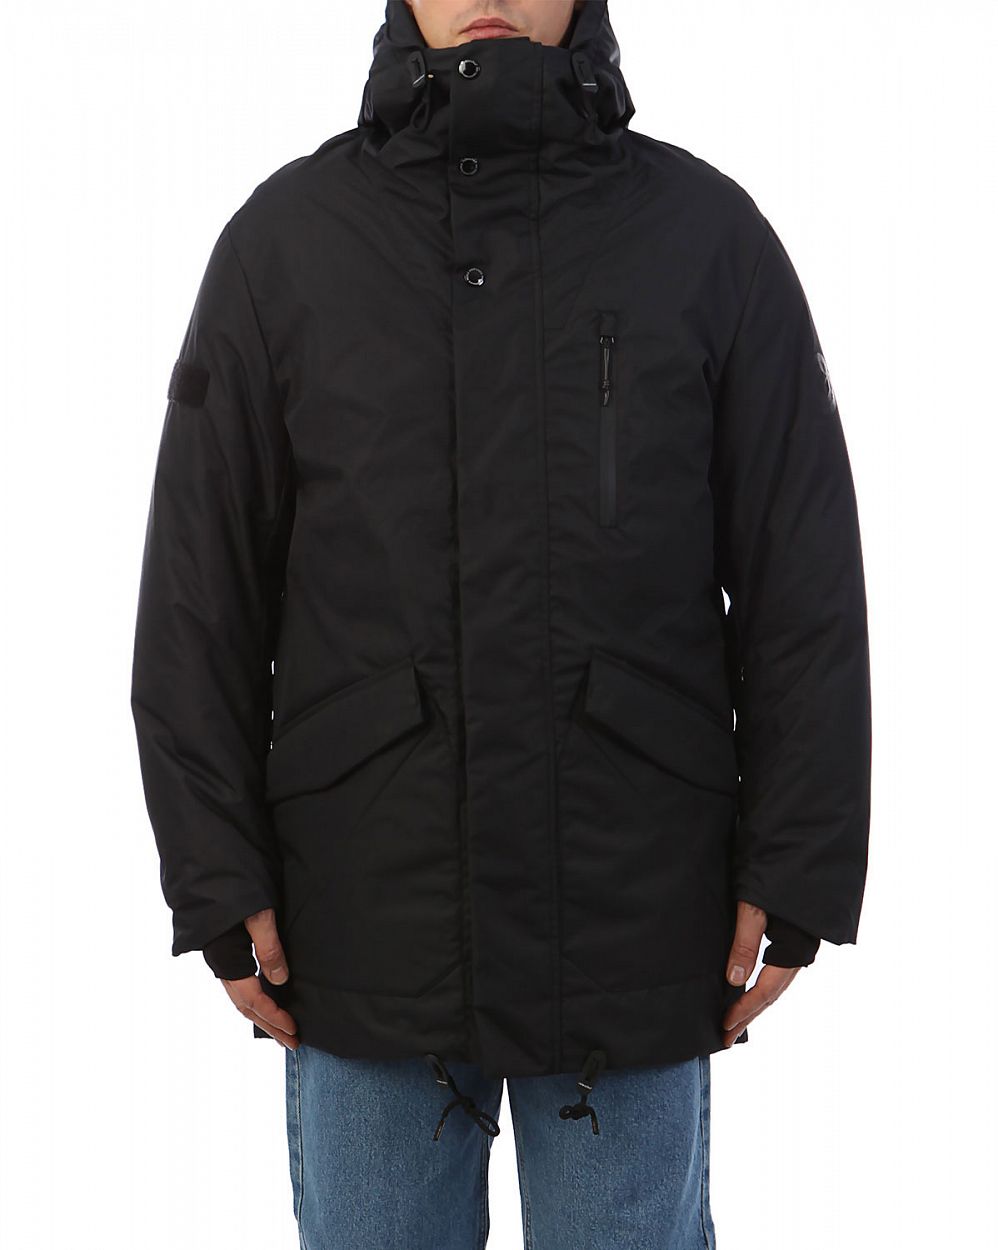 Куртка мужская зимняя водонепроницаемая на мембране Reloaded Style 2 Navy отзывы